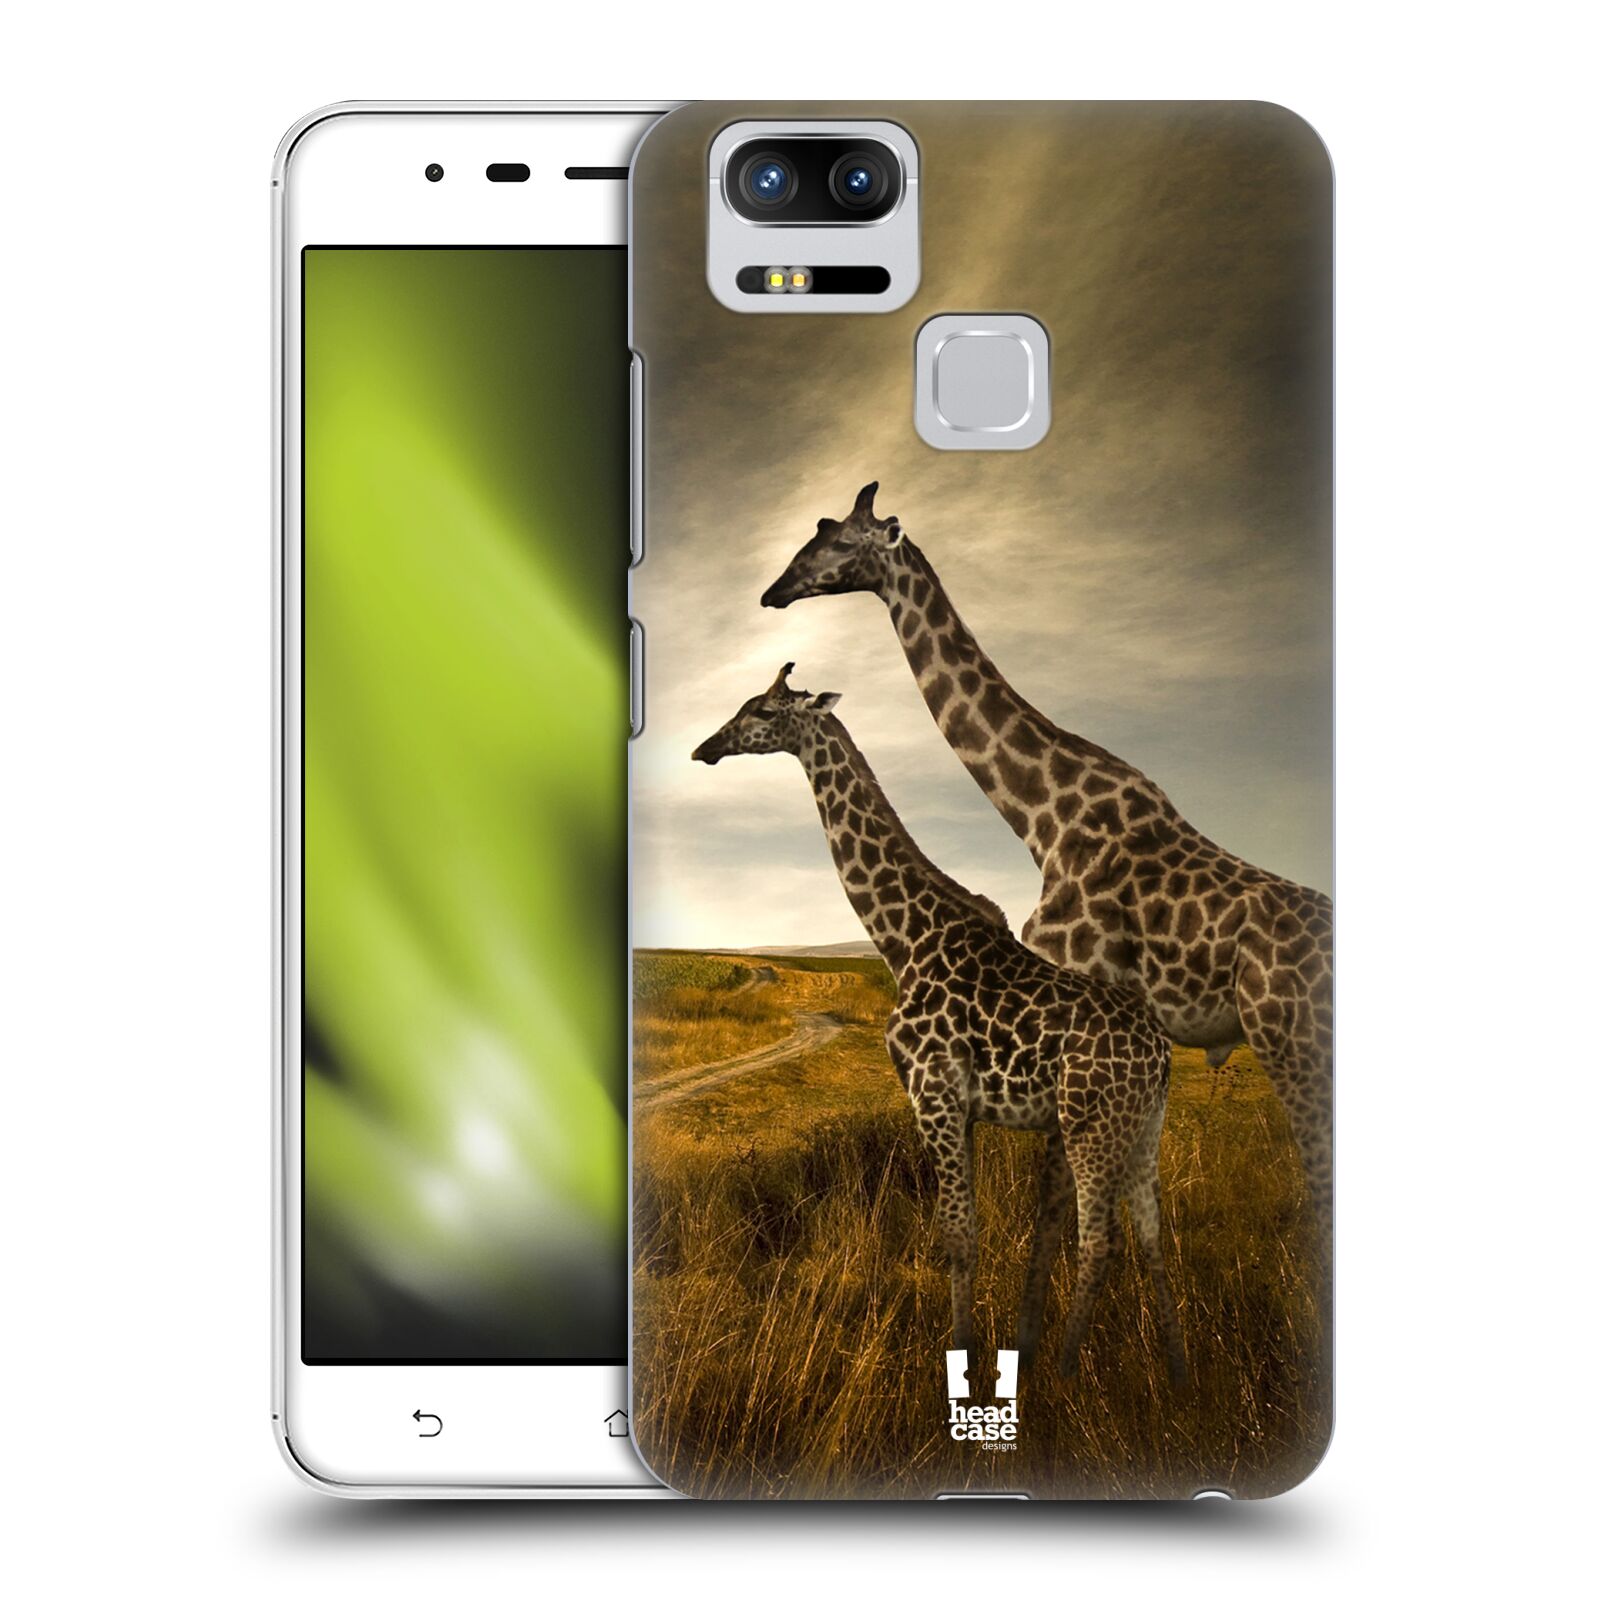 HEAD CASE plastový obal na mobil Asus Zenfone 3 Zoom ZE553KL vzor Divočina, Divoký život a zvířata foto AFRIKA ŽIRAFY VÝHLED